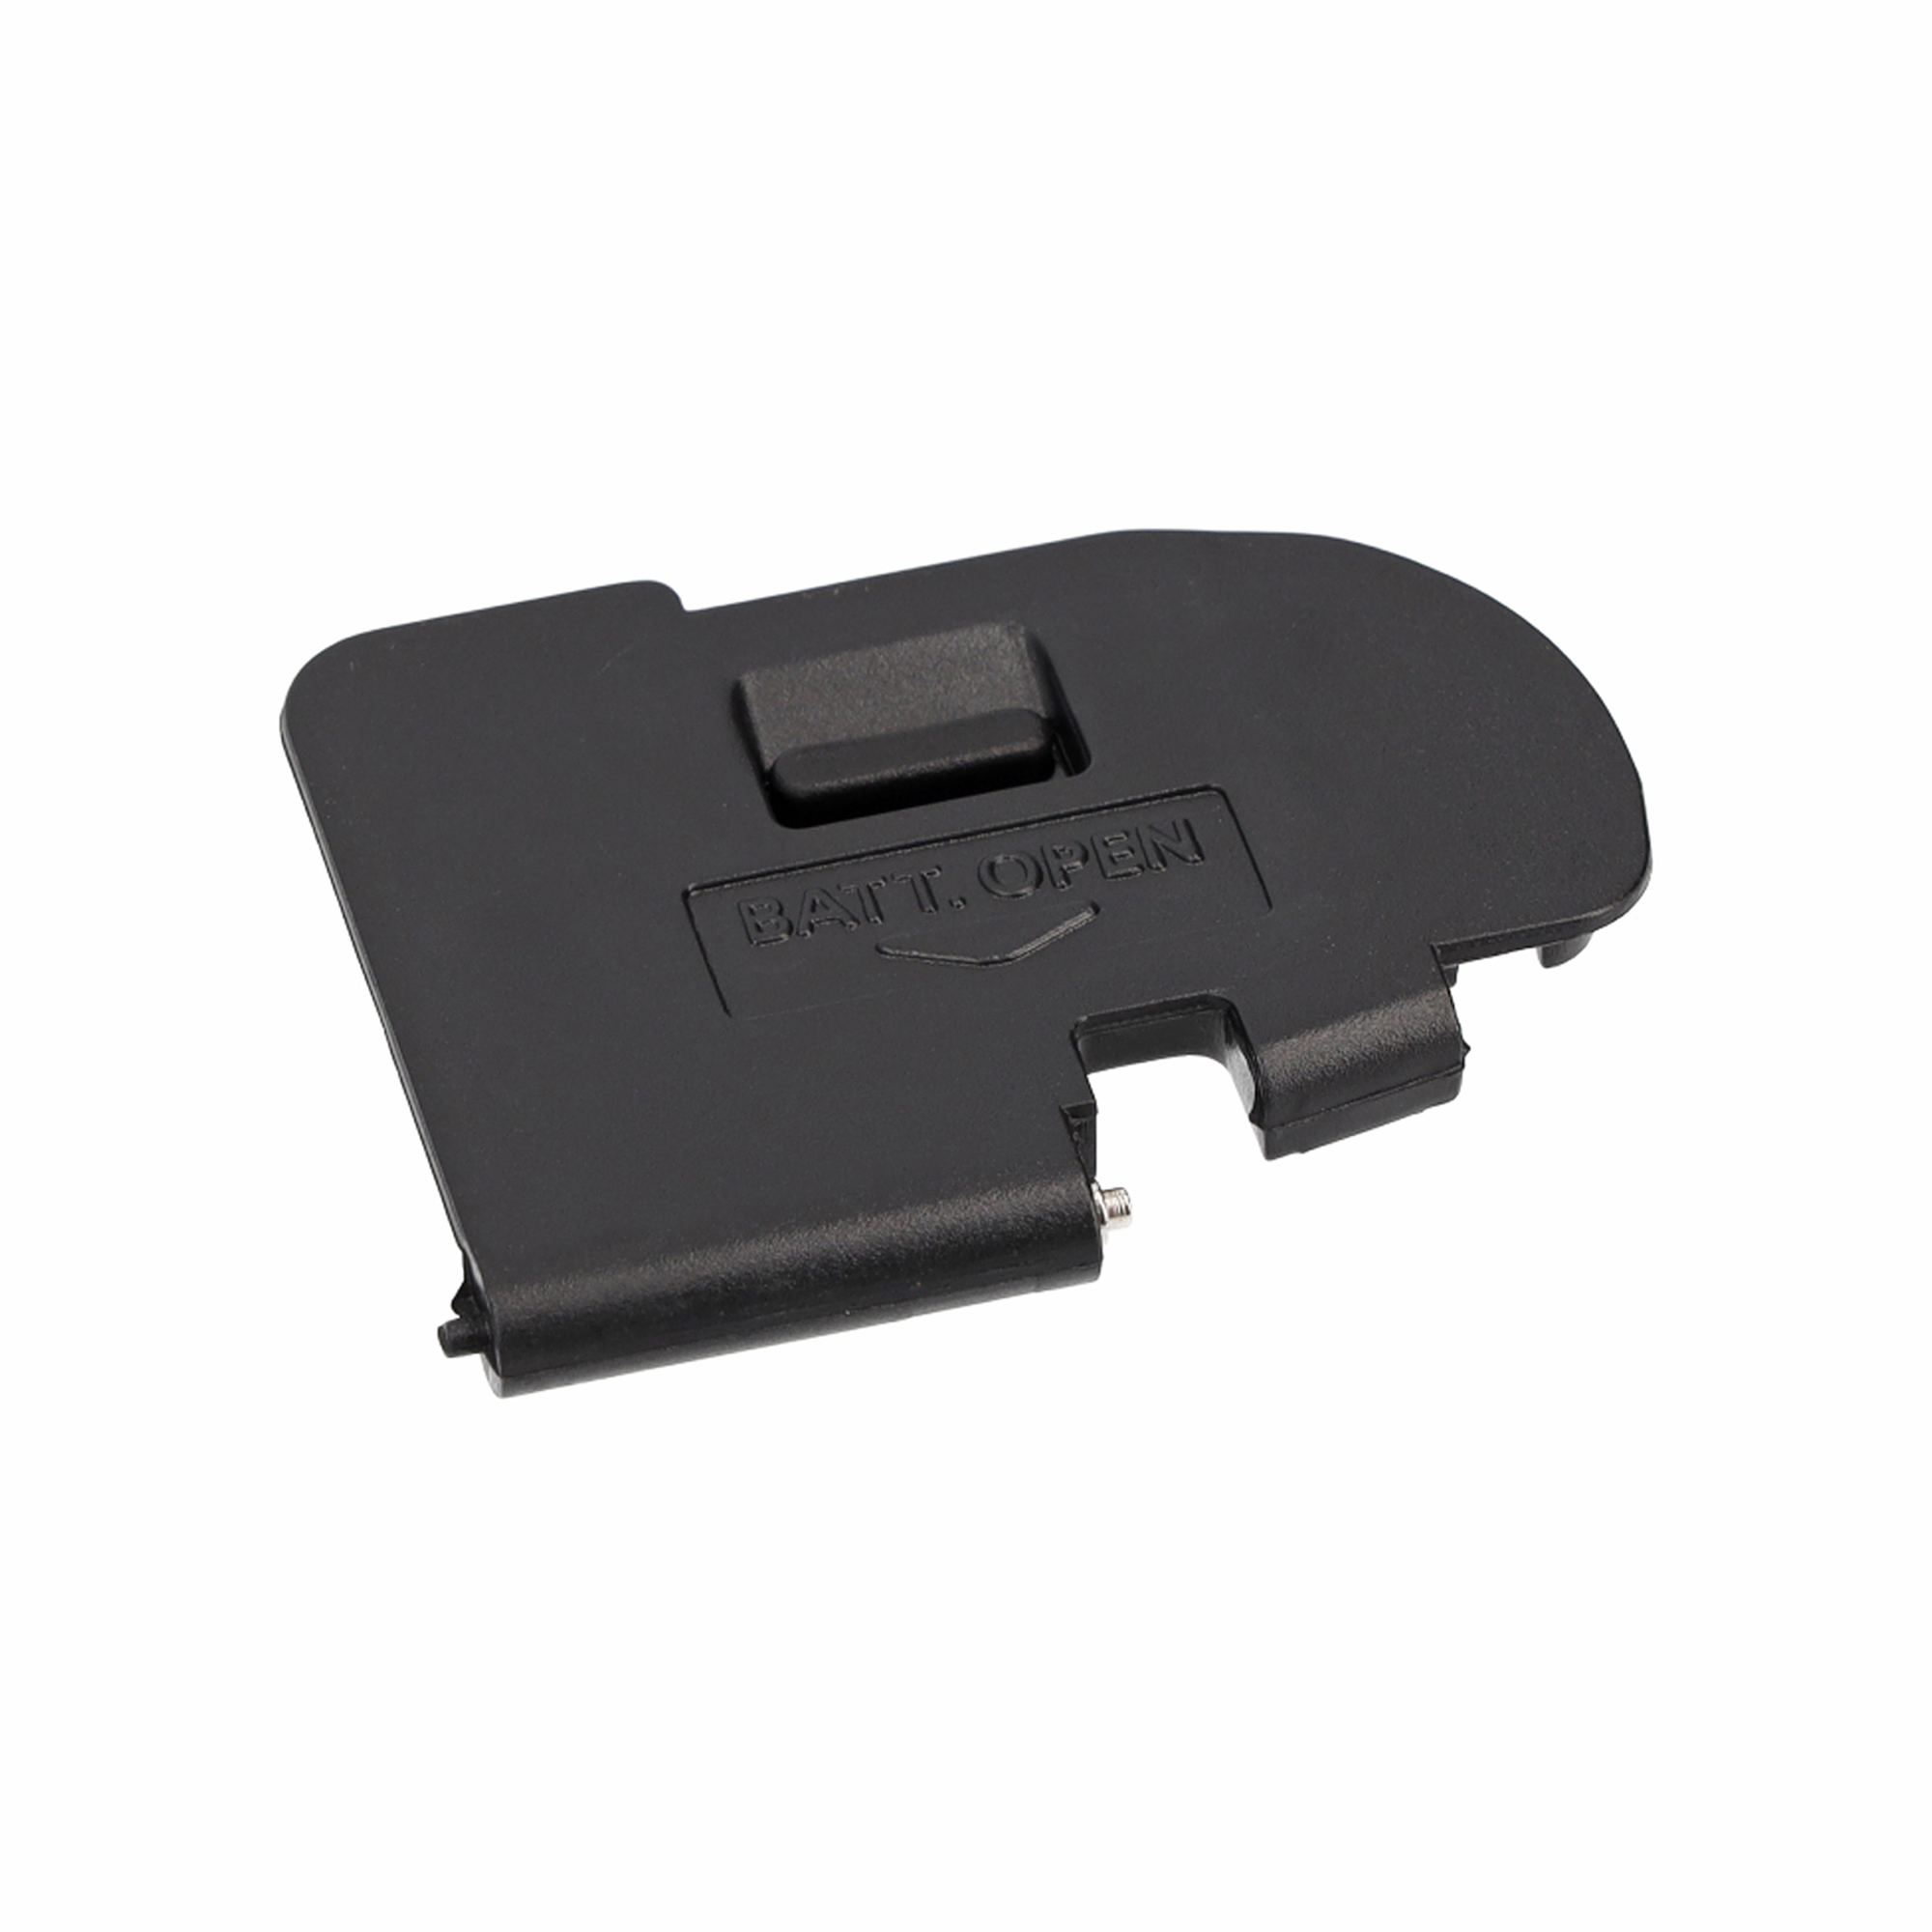 AYEX Batteriefachdeckel für Canon II, Black Mark Batteriegriff-Set, 5D EOS